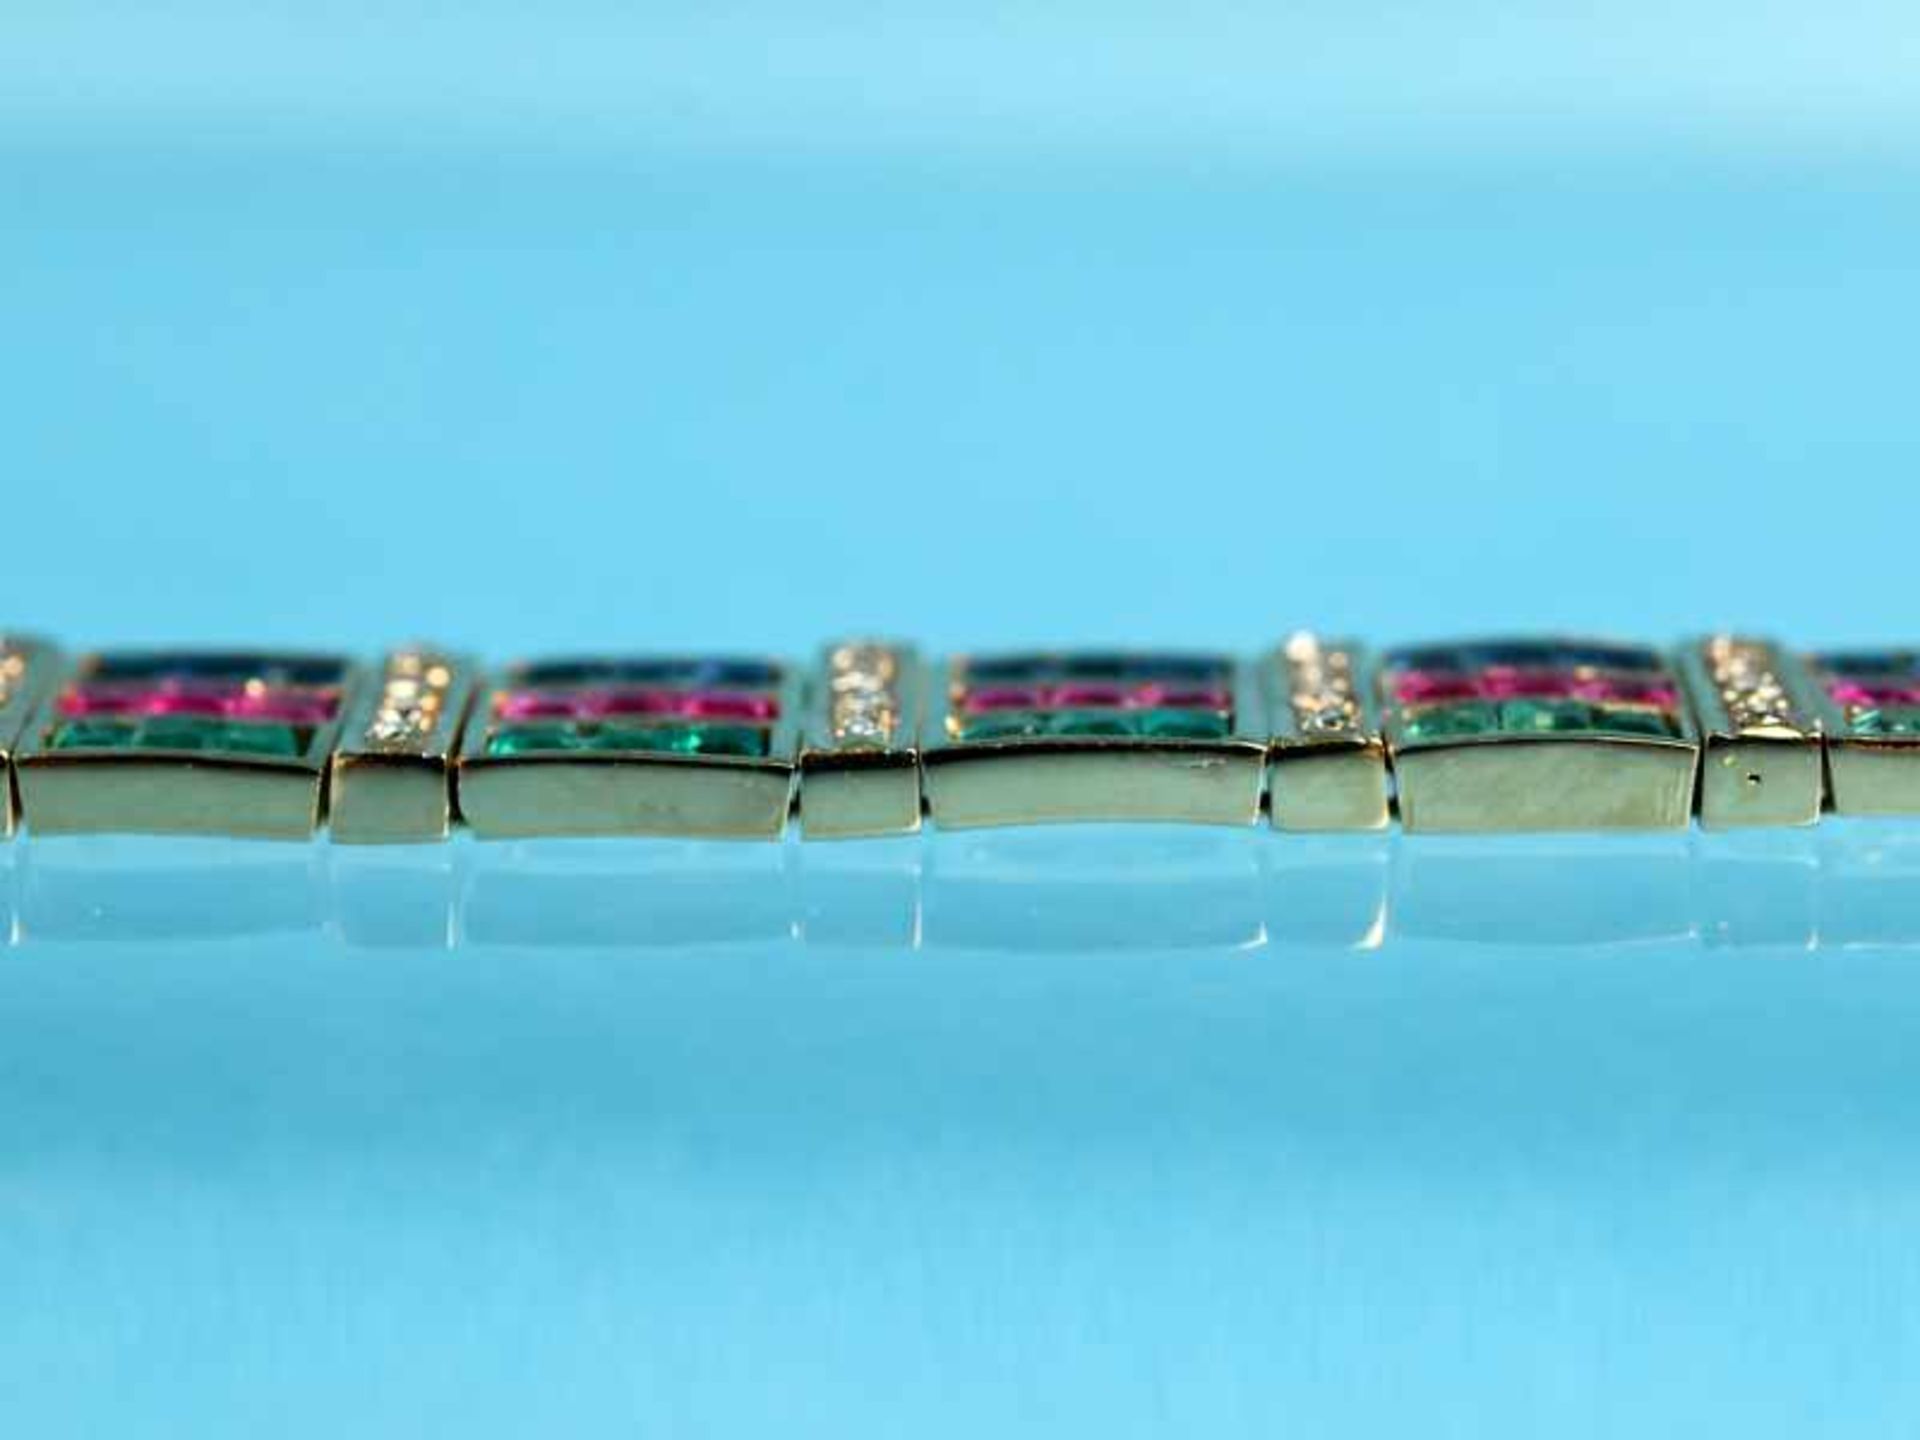 Armband mit Smaragd,- Rubin,- Saphircarreesteinen und Diamanten, zusammen ca. 0,2 ct, 20. Jh. - Image 5 of 6